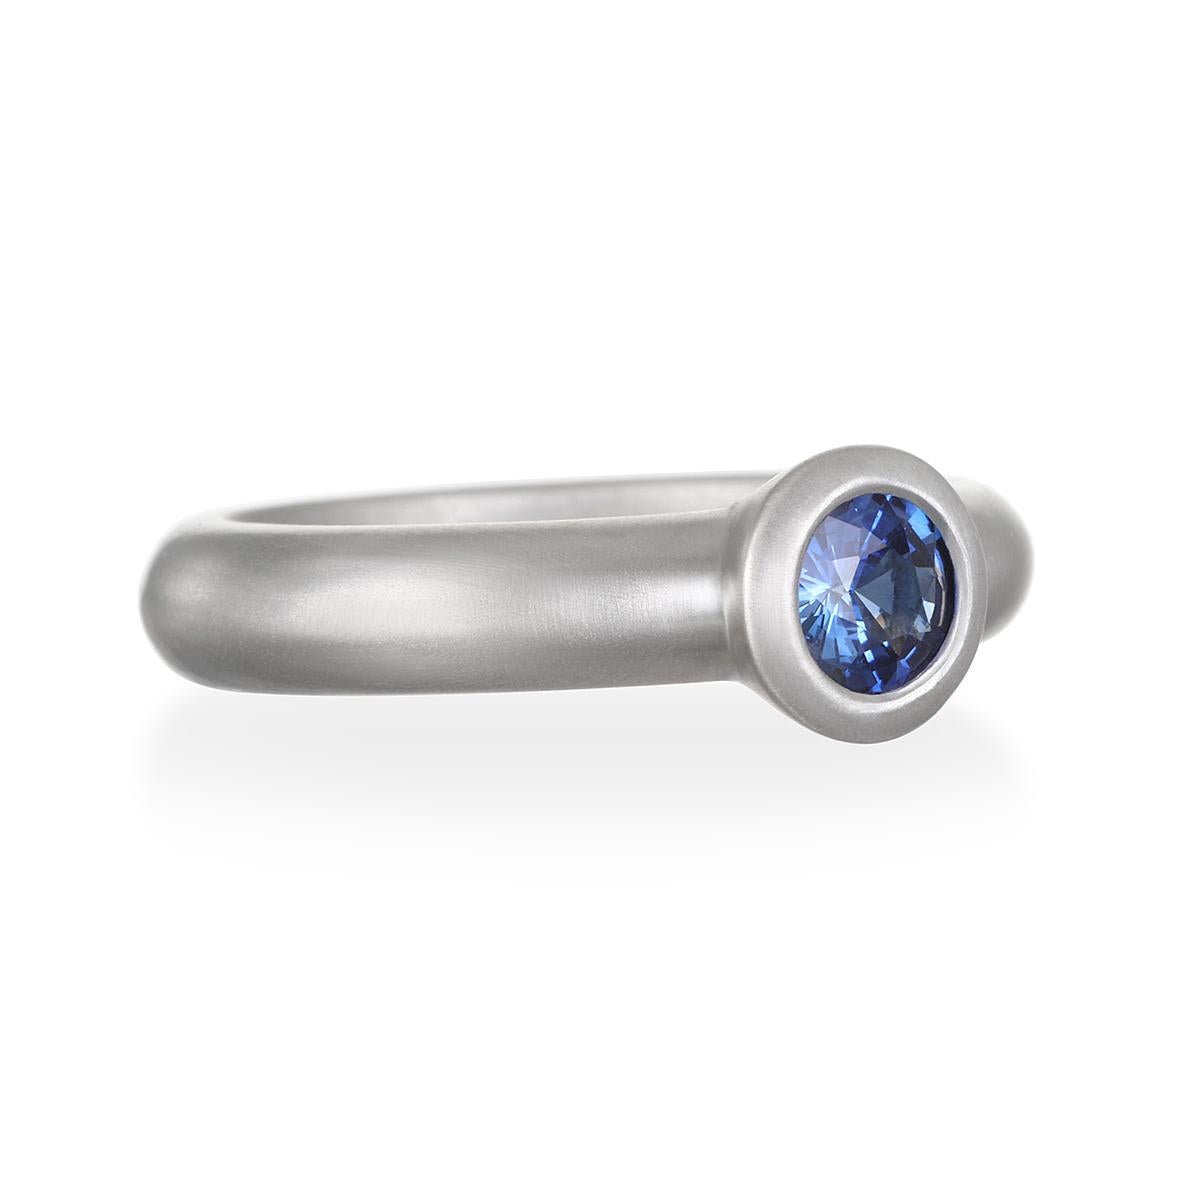 Dieser Ring aus blauem Ceylon-Saphir ist in Platin gefasst und mit einer matten Oberfläche versehen, die ihm einen klaren, zeitlosen Look verleiht. Er kann als Einzelstück getragen oder mit anderen Ringen kombiniert werden. 

Sapphire:  1.0